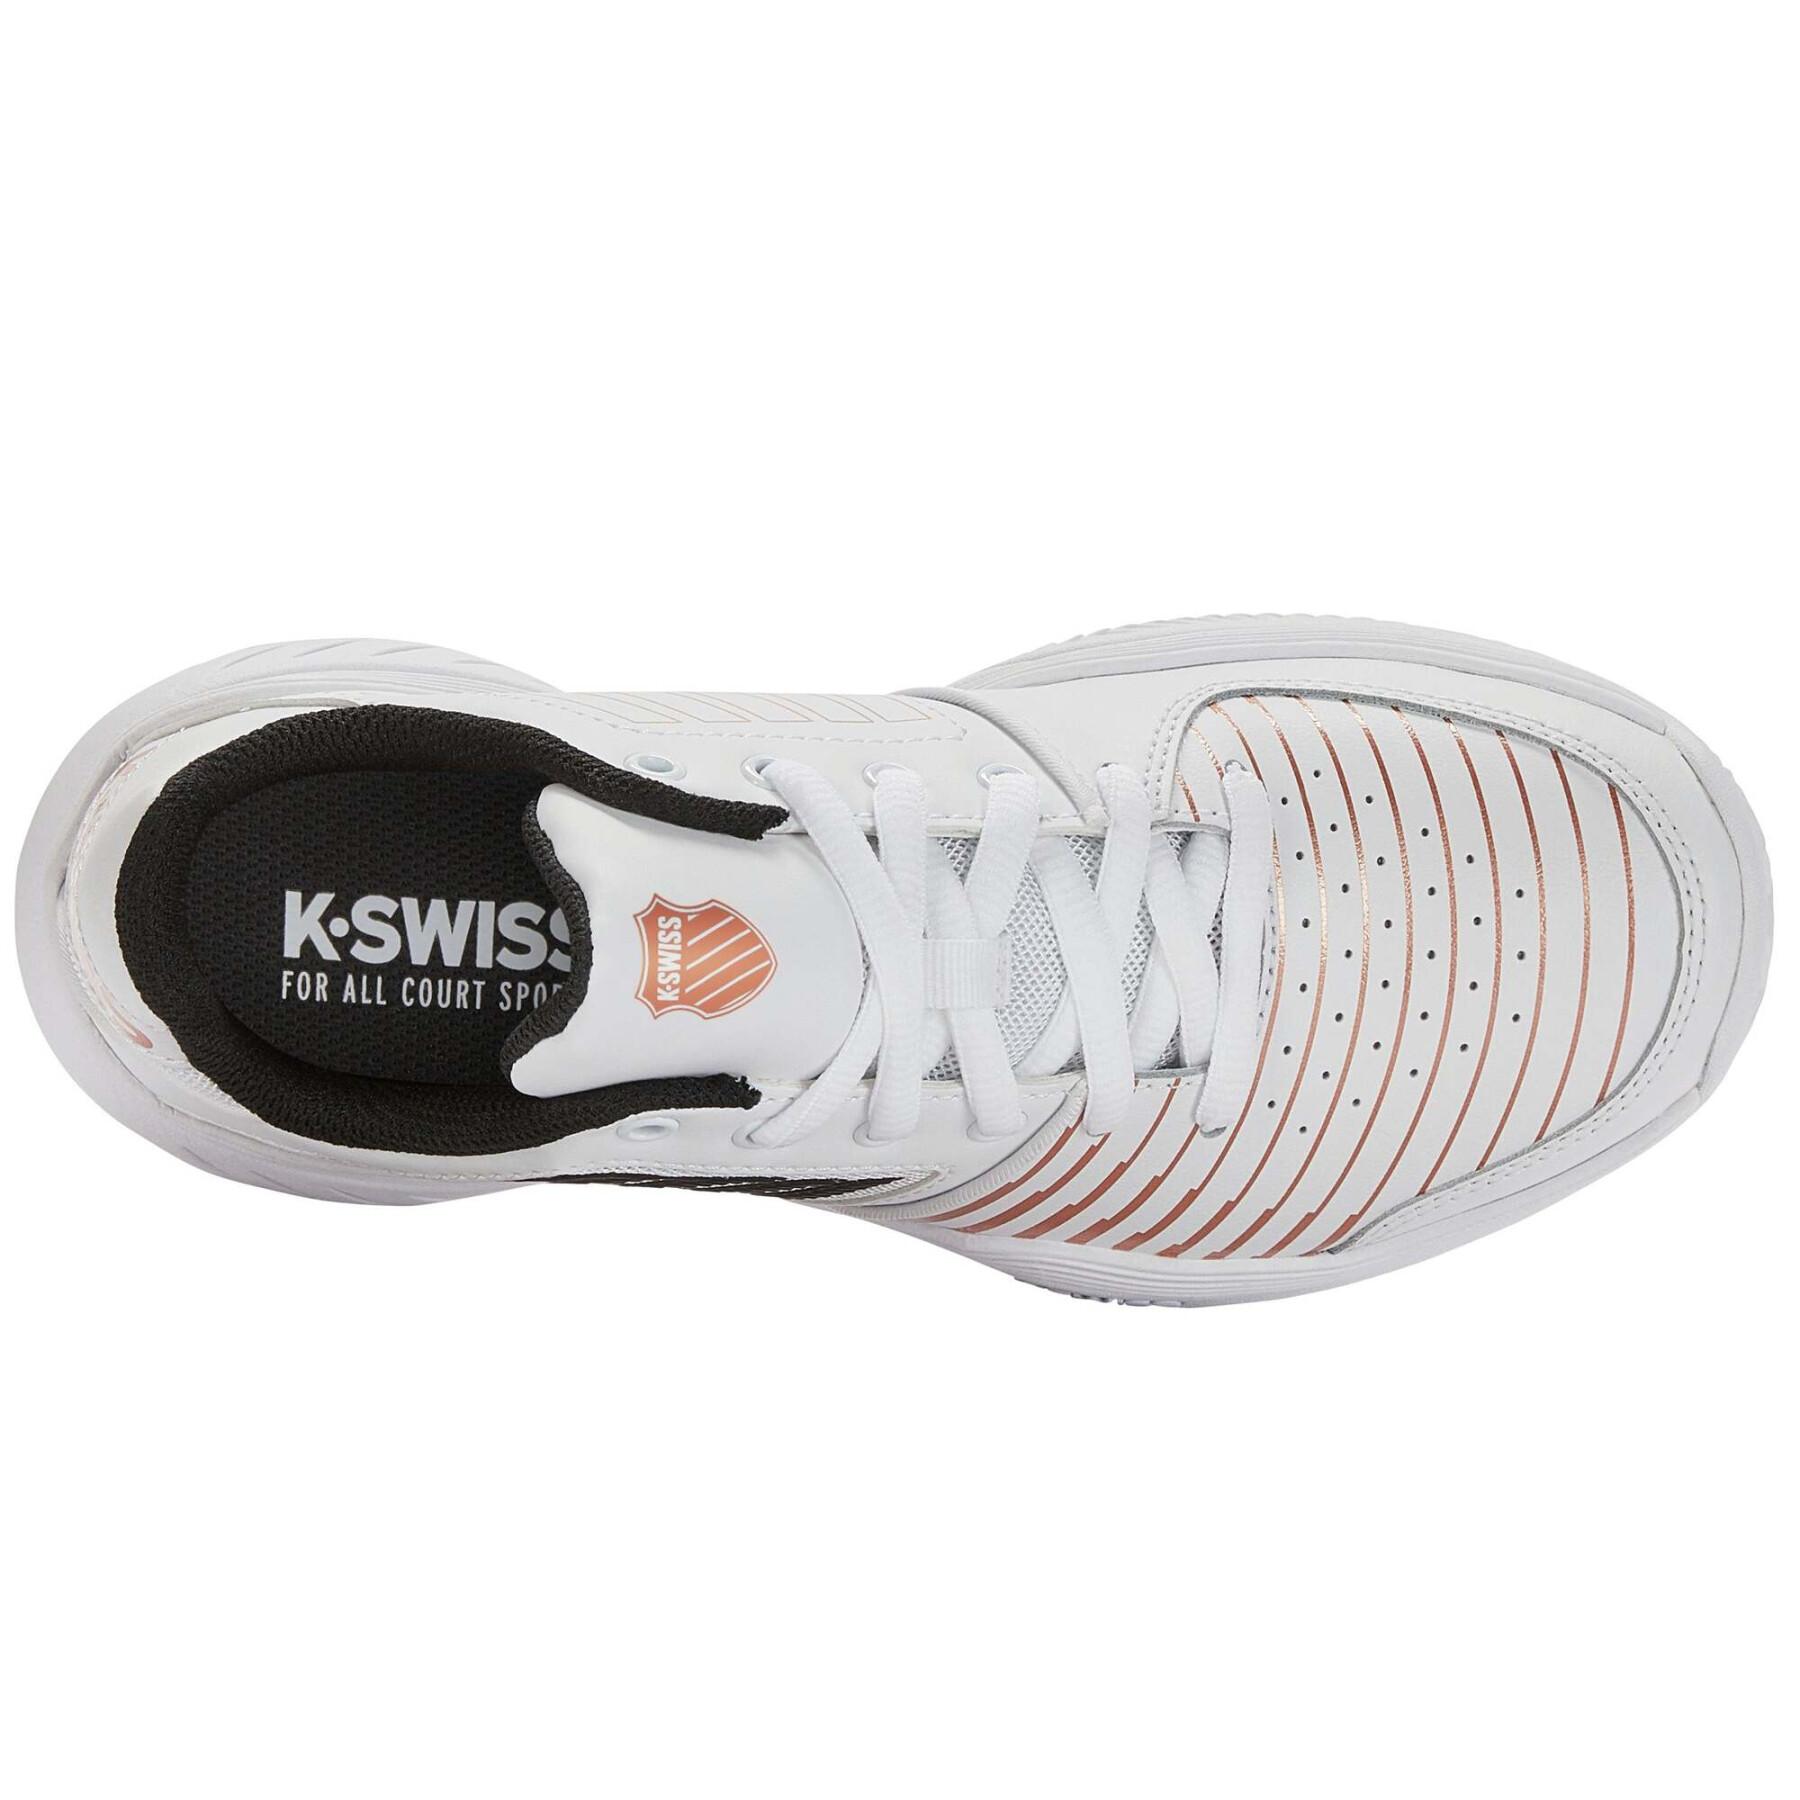 Women's tennis shoes K-Swiss Court Express Hb